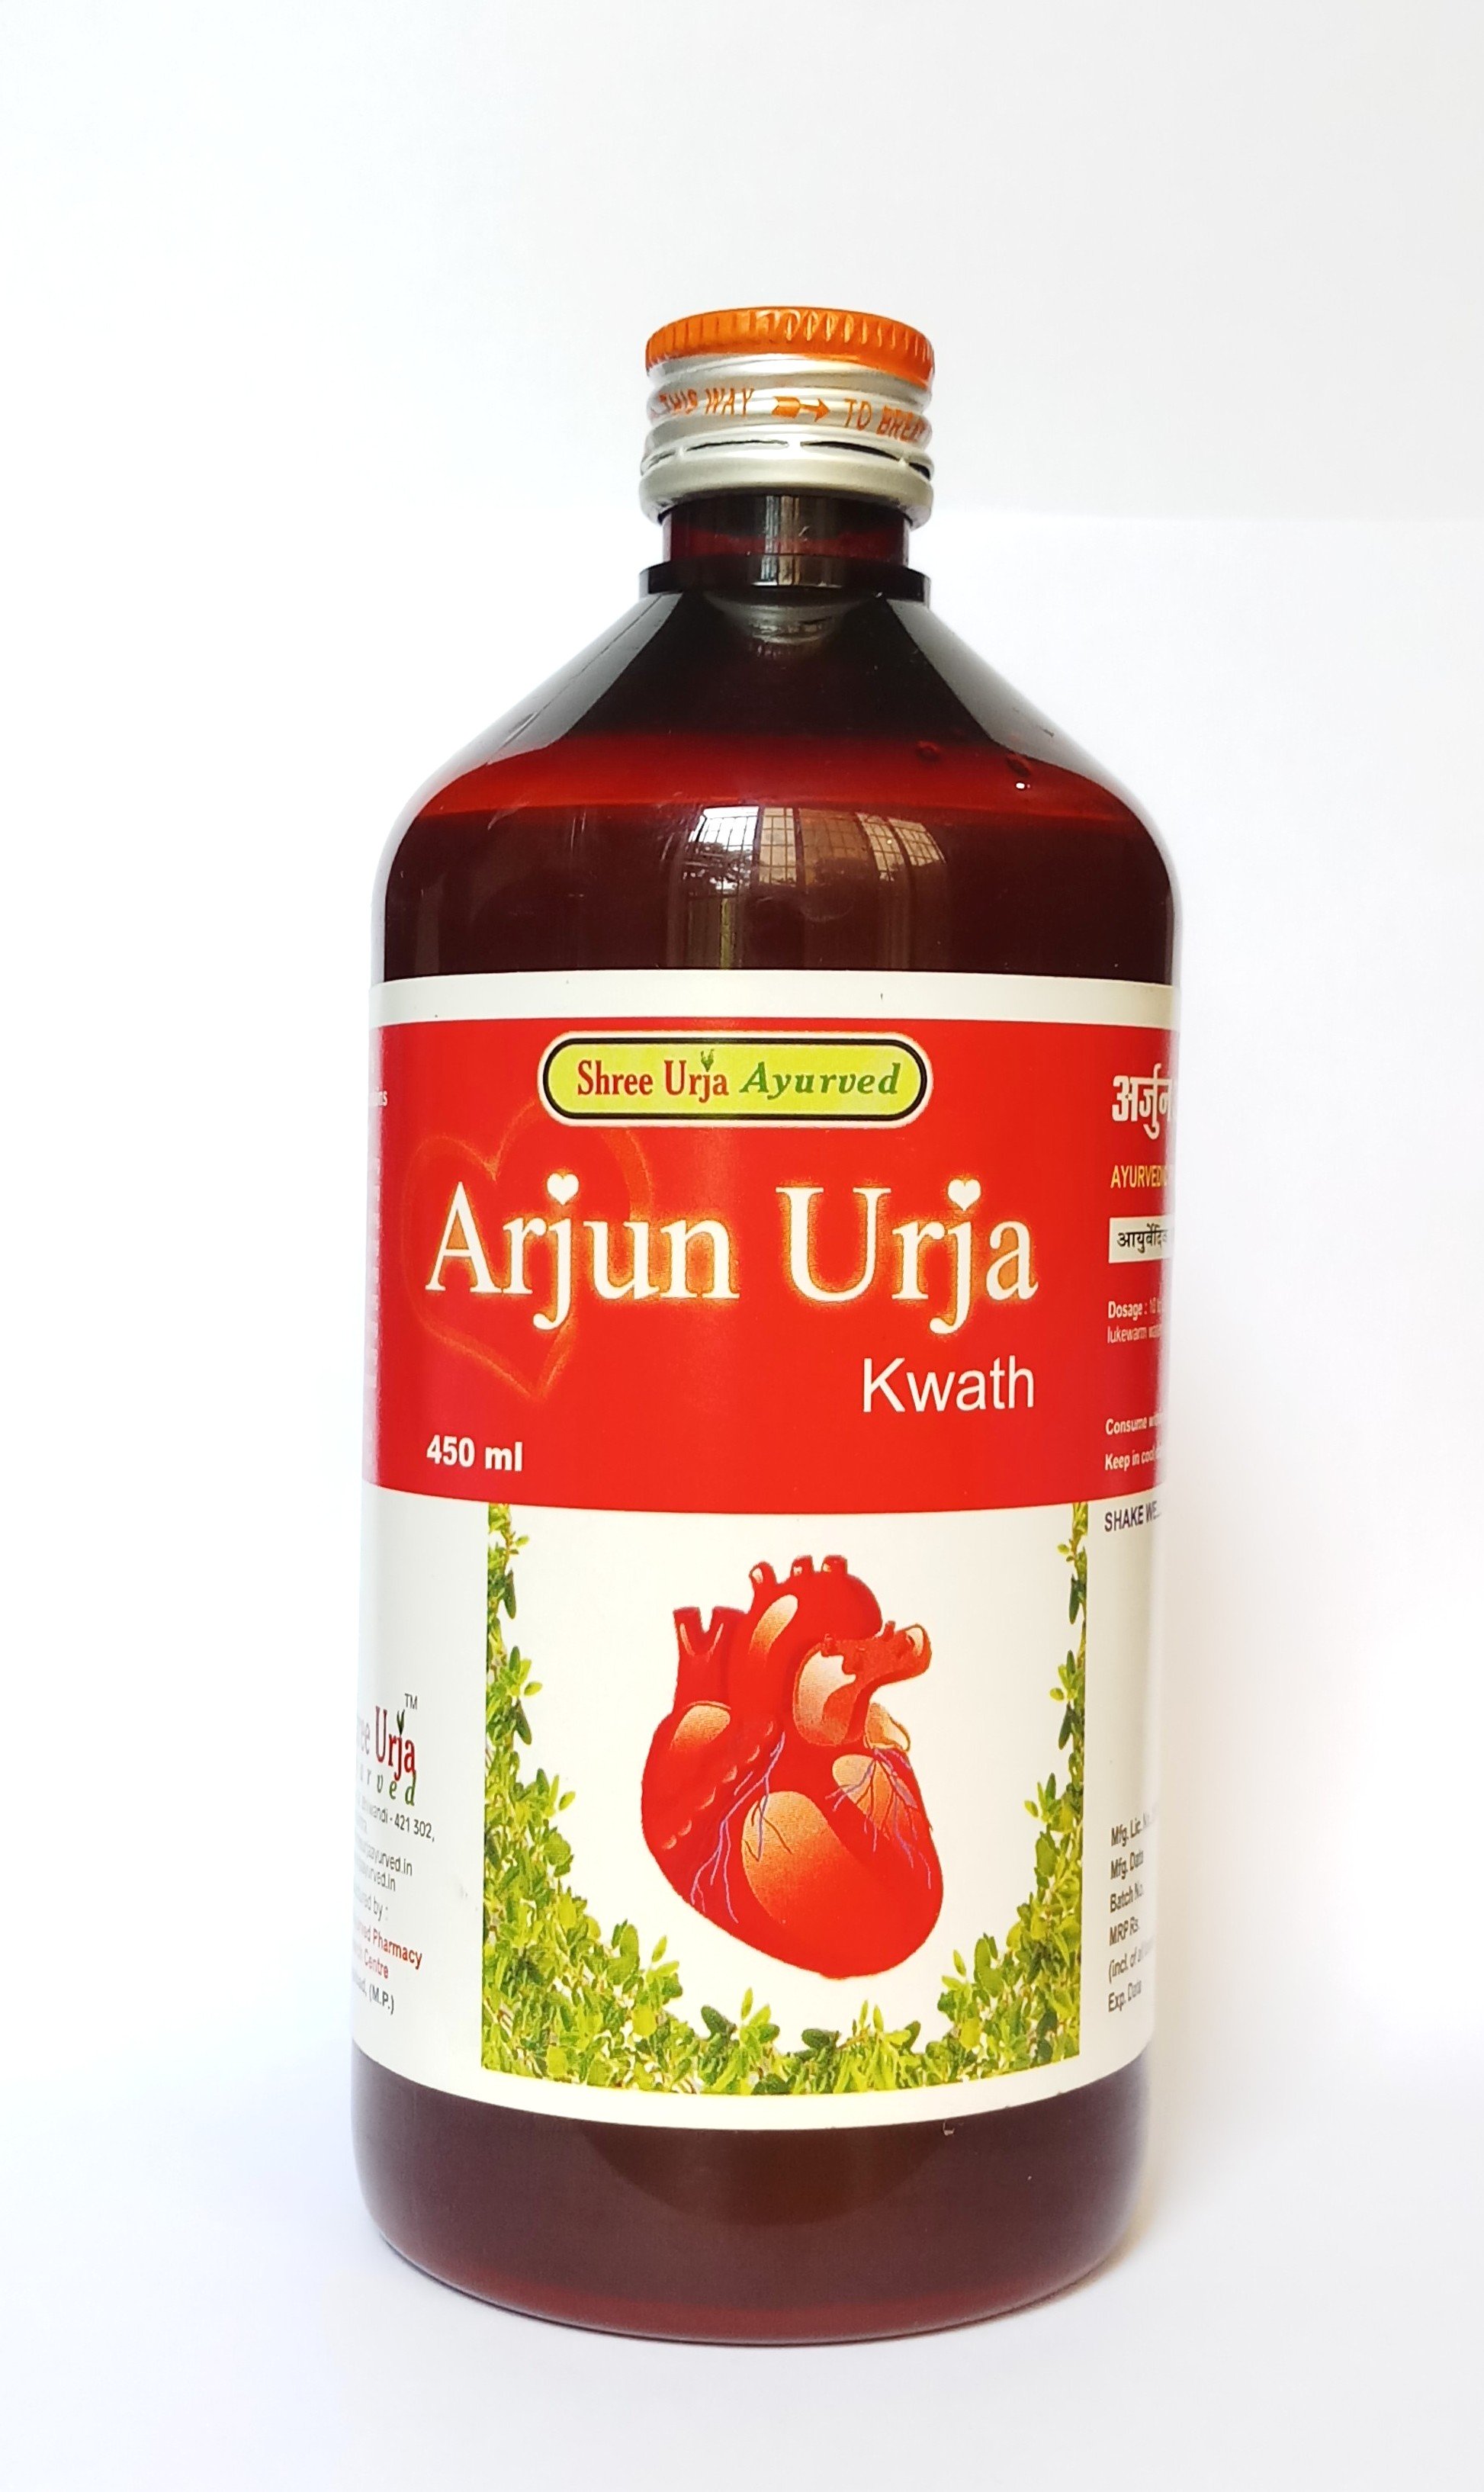 Buy Arjun Urja Kwath at Best Price Online